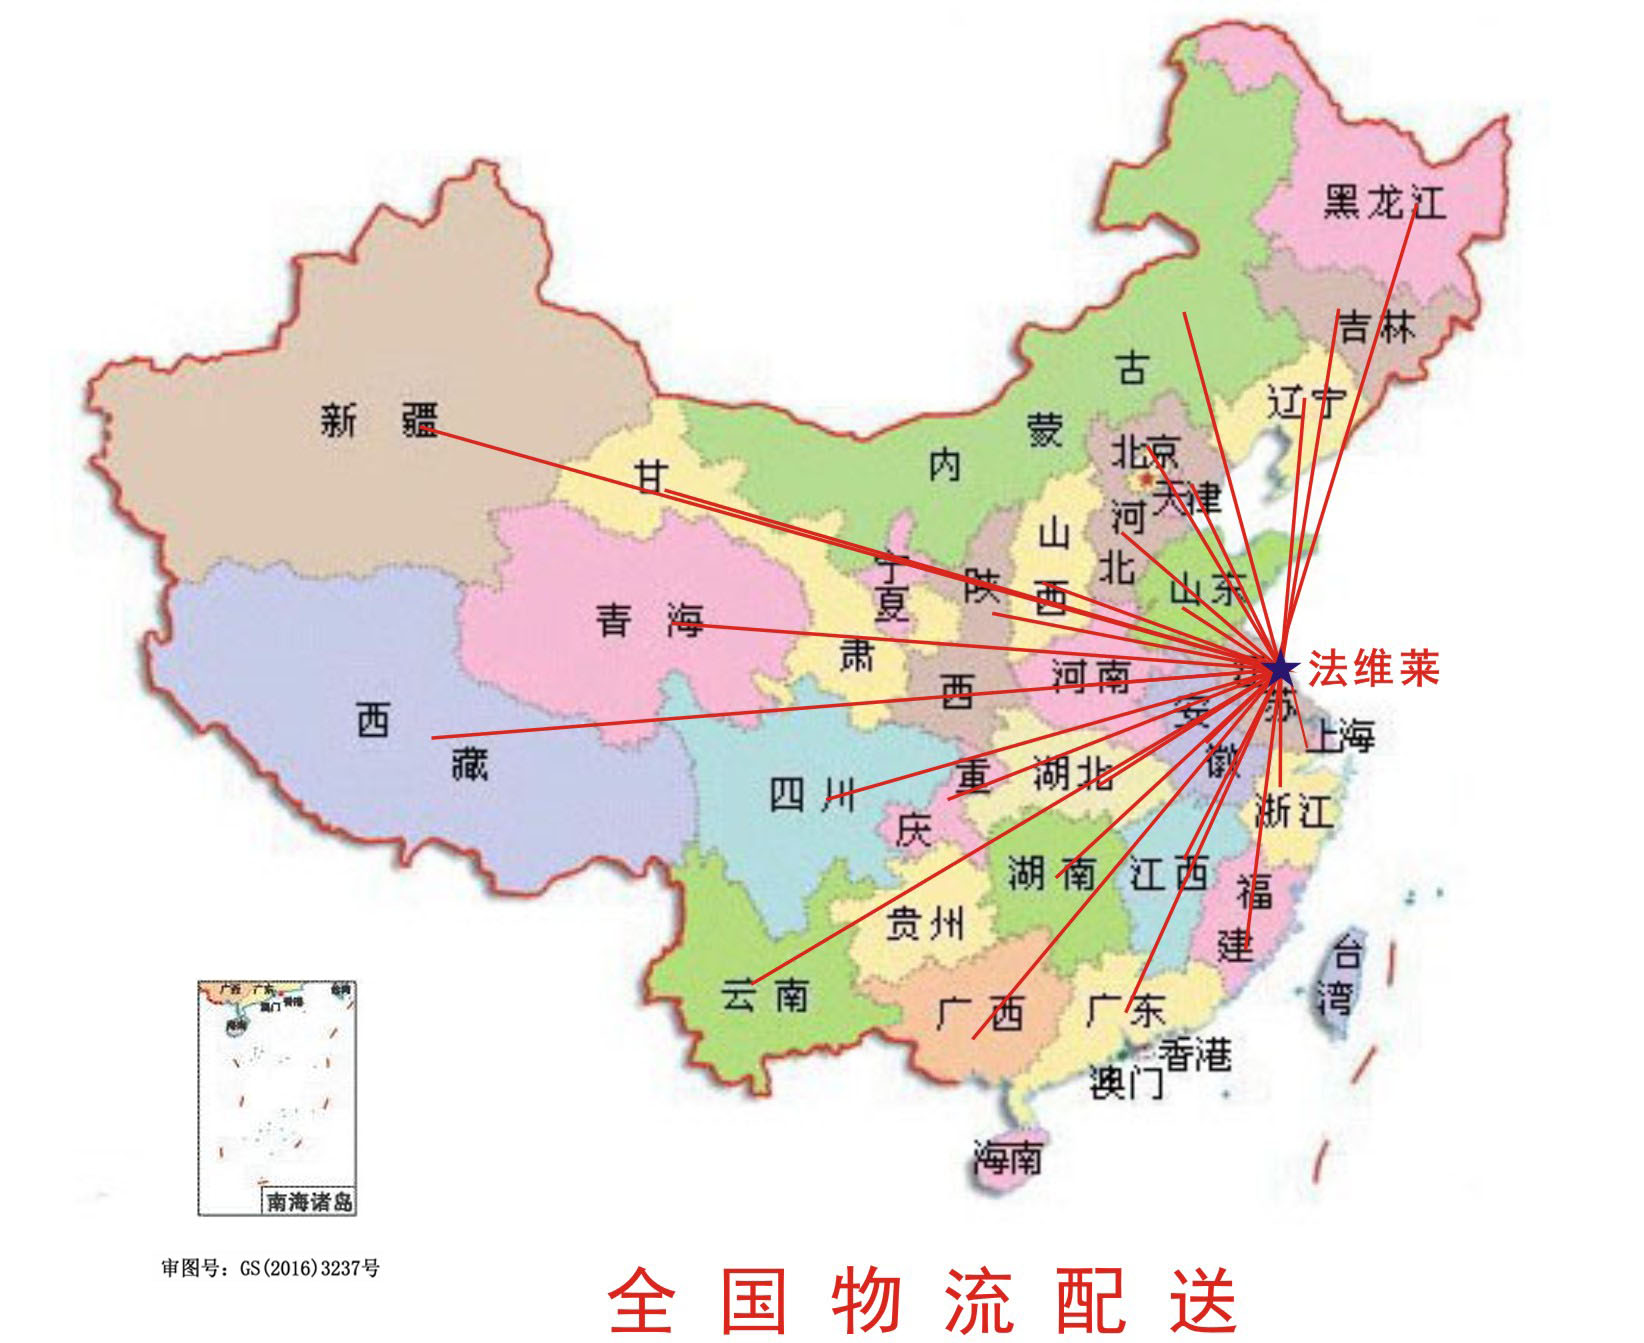 南京法维莱电器有限公司服务网点范围